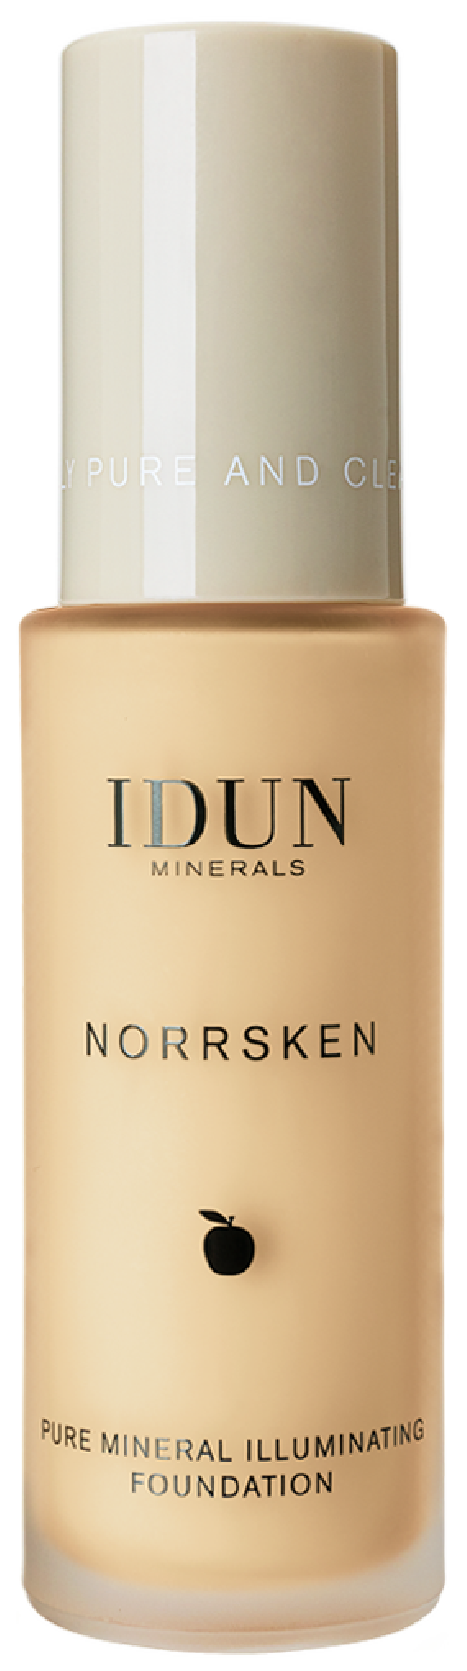 Norrsken Pure Mineral Illuminating Foundation, Svea, Medium, 30 ml